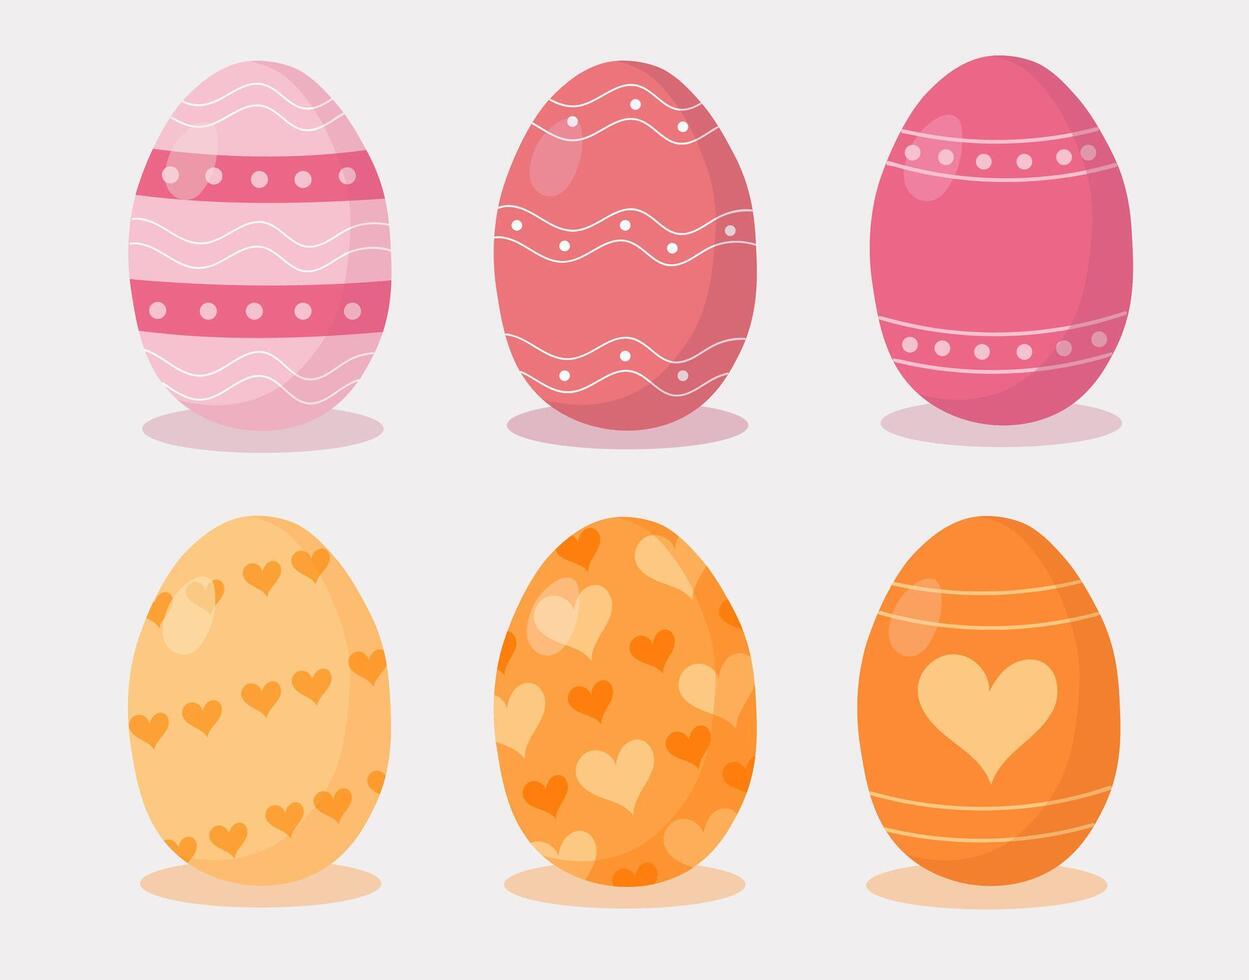 Pascua de Resurrección huevos colocar. contento Pascua de Resurrección. mano dibujado. amarillo huevos con corazones, rosado con resumen rayas y puntos vector ilustración.